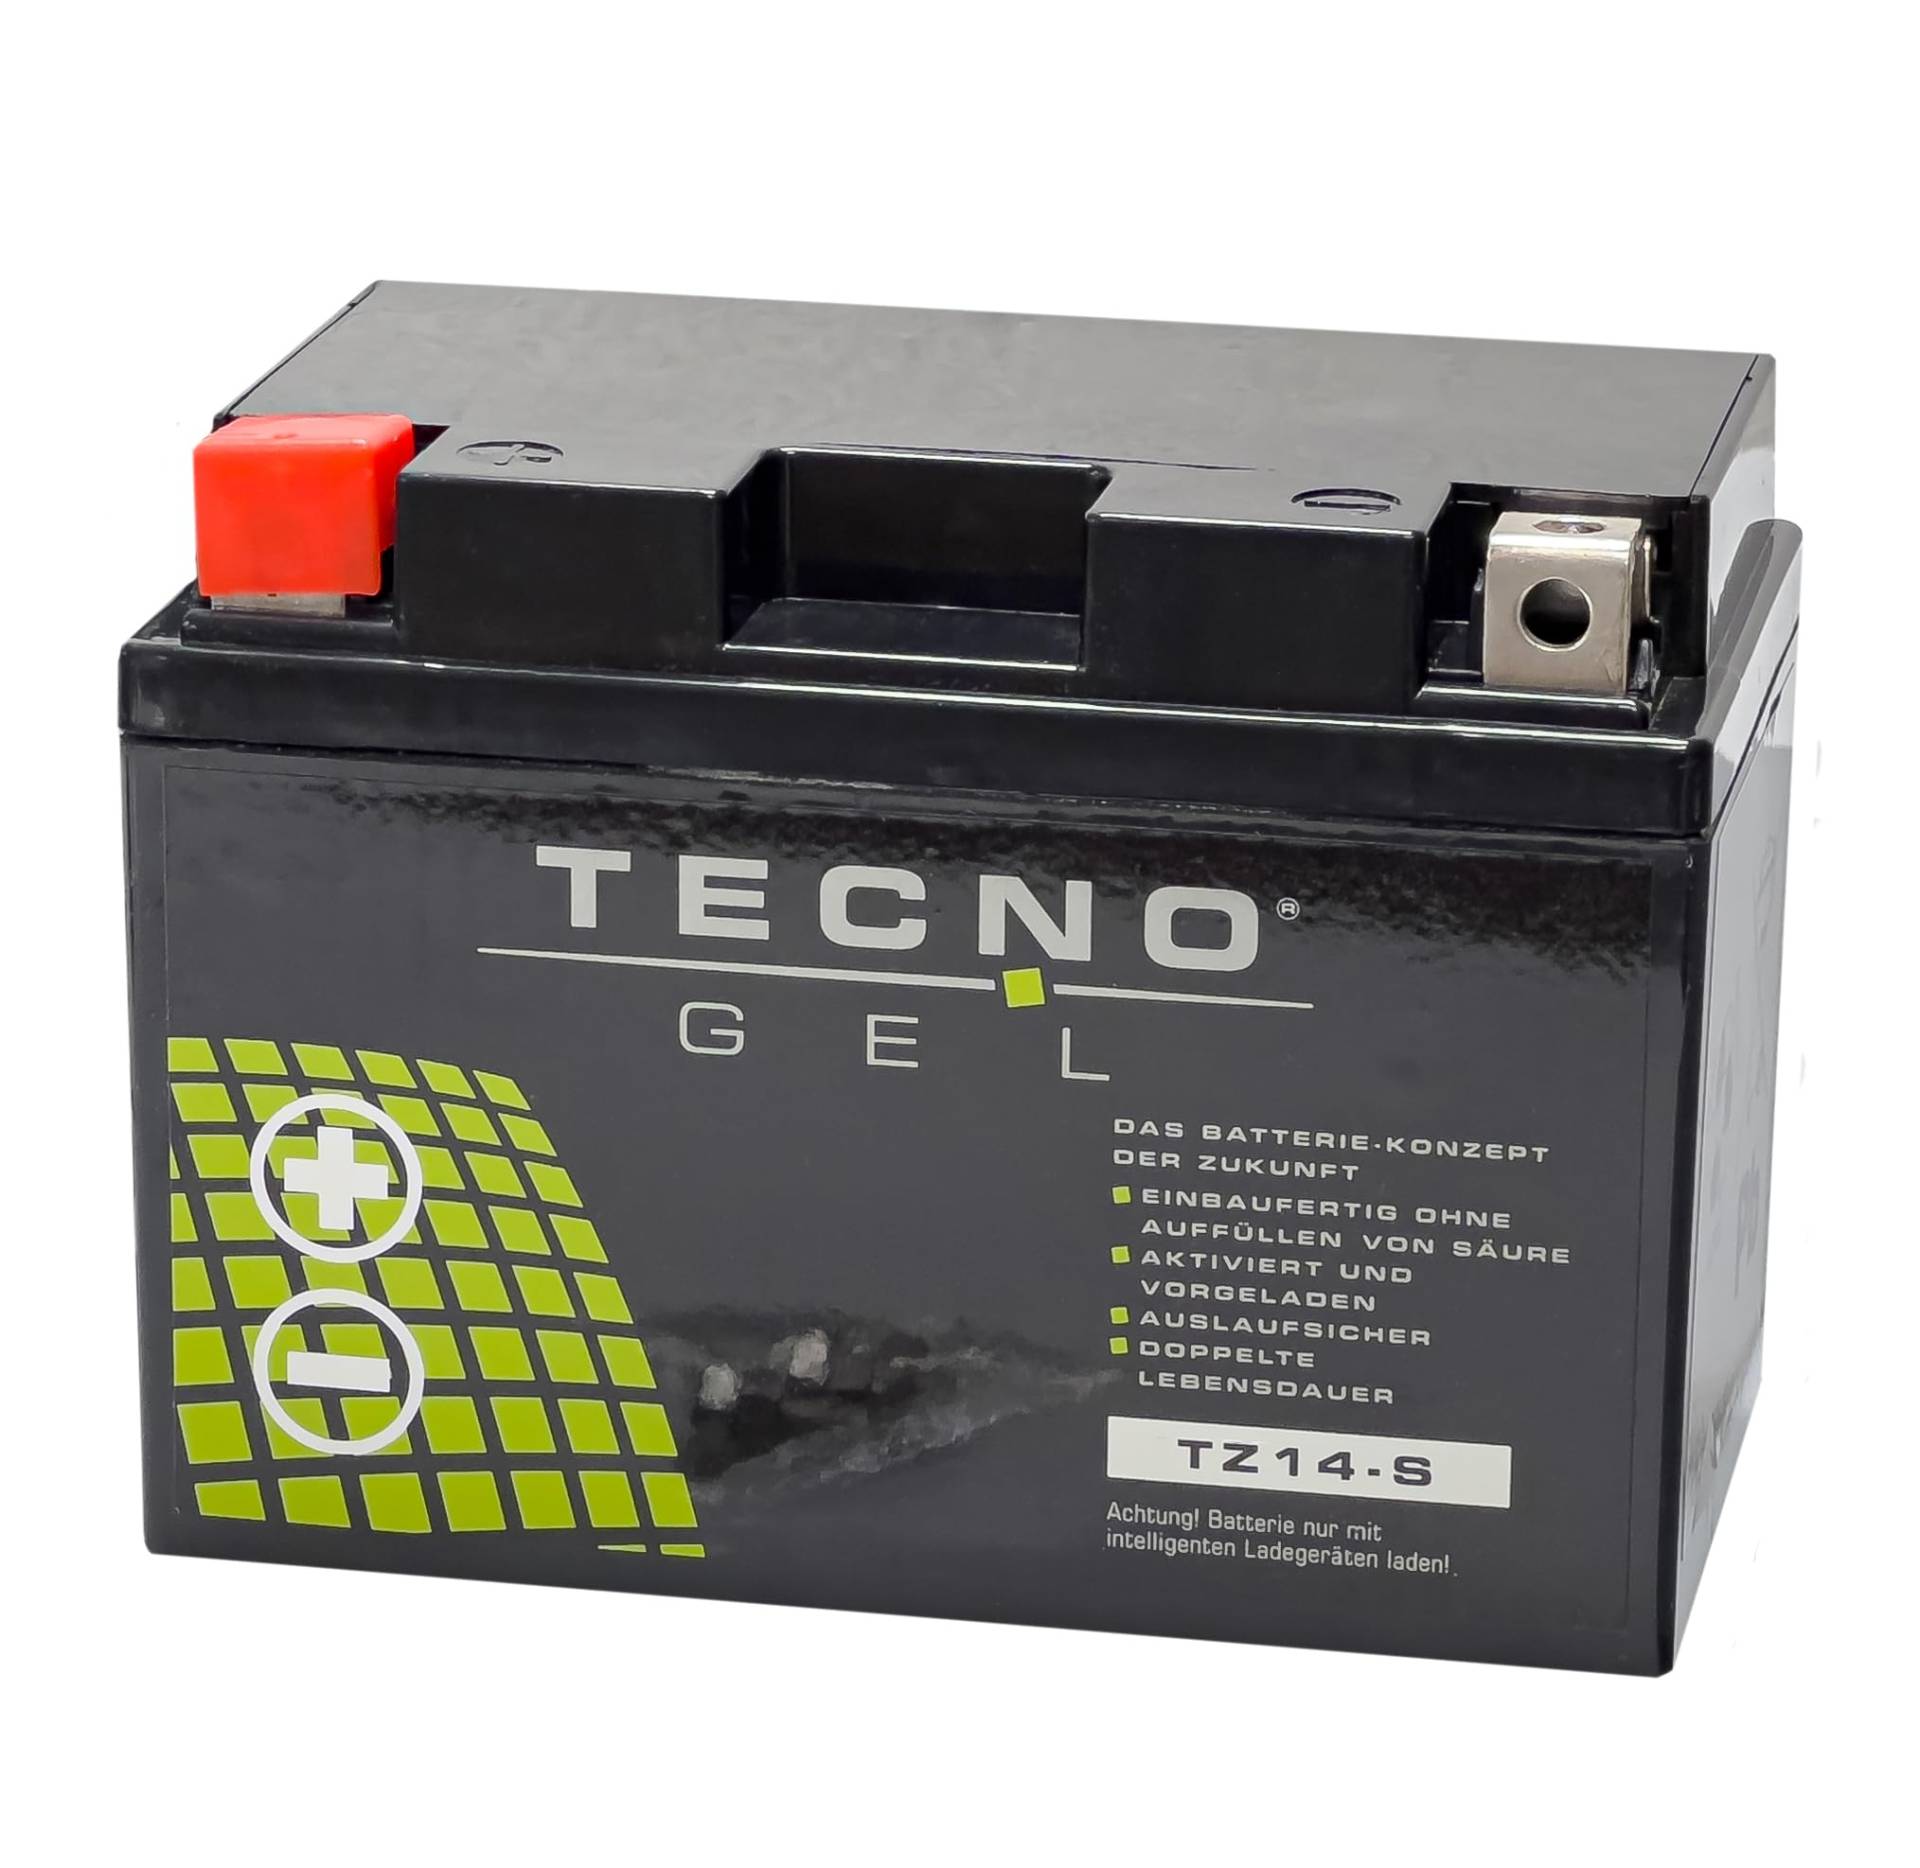 TECNO-GEL Motorrad-Batterie für YTZ14-S für Ktm Super Adventure 1290, 12V Gel-Batterie 11,3Ah (DIN 51101), 151x87x110 mm von Wirth-Federn